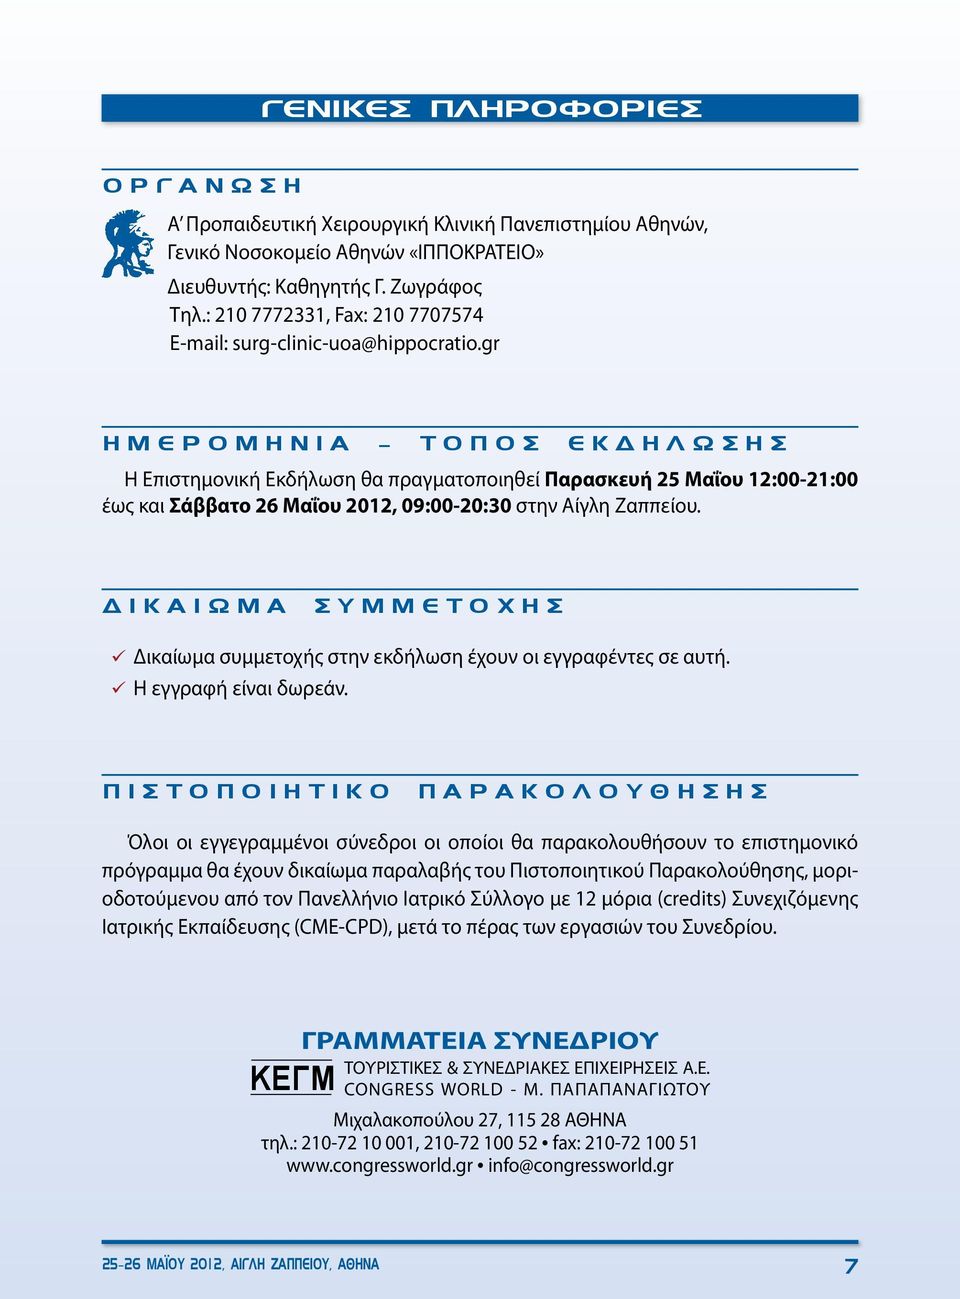 gr ΗΜΕΡΟΜΗΝΙΑ - ΤΟΠΟΣ ΕΚΔΗΛΩΣΗΣ Η Επιστημονική Εκδήλωση θα πραγματοποιηθεί Παρασκευή 25 Μαΐου 12:00-21:00 έως και Σάββατο 26 Μαΐου 2012, 09:00-20:30 στην Αίγλη Ζαππείου.